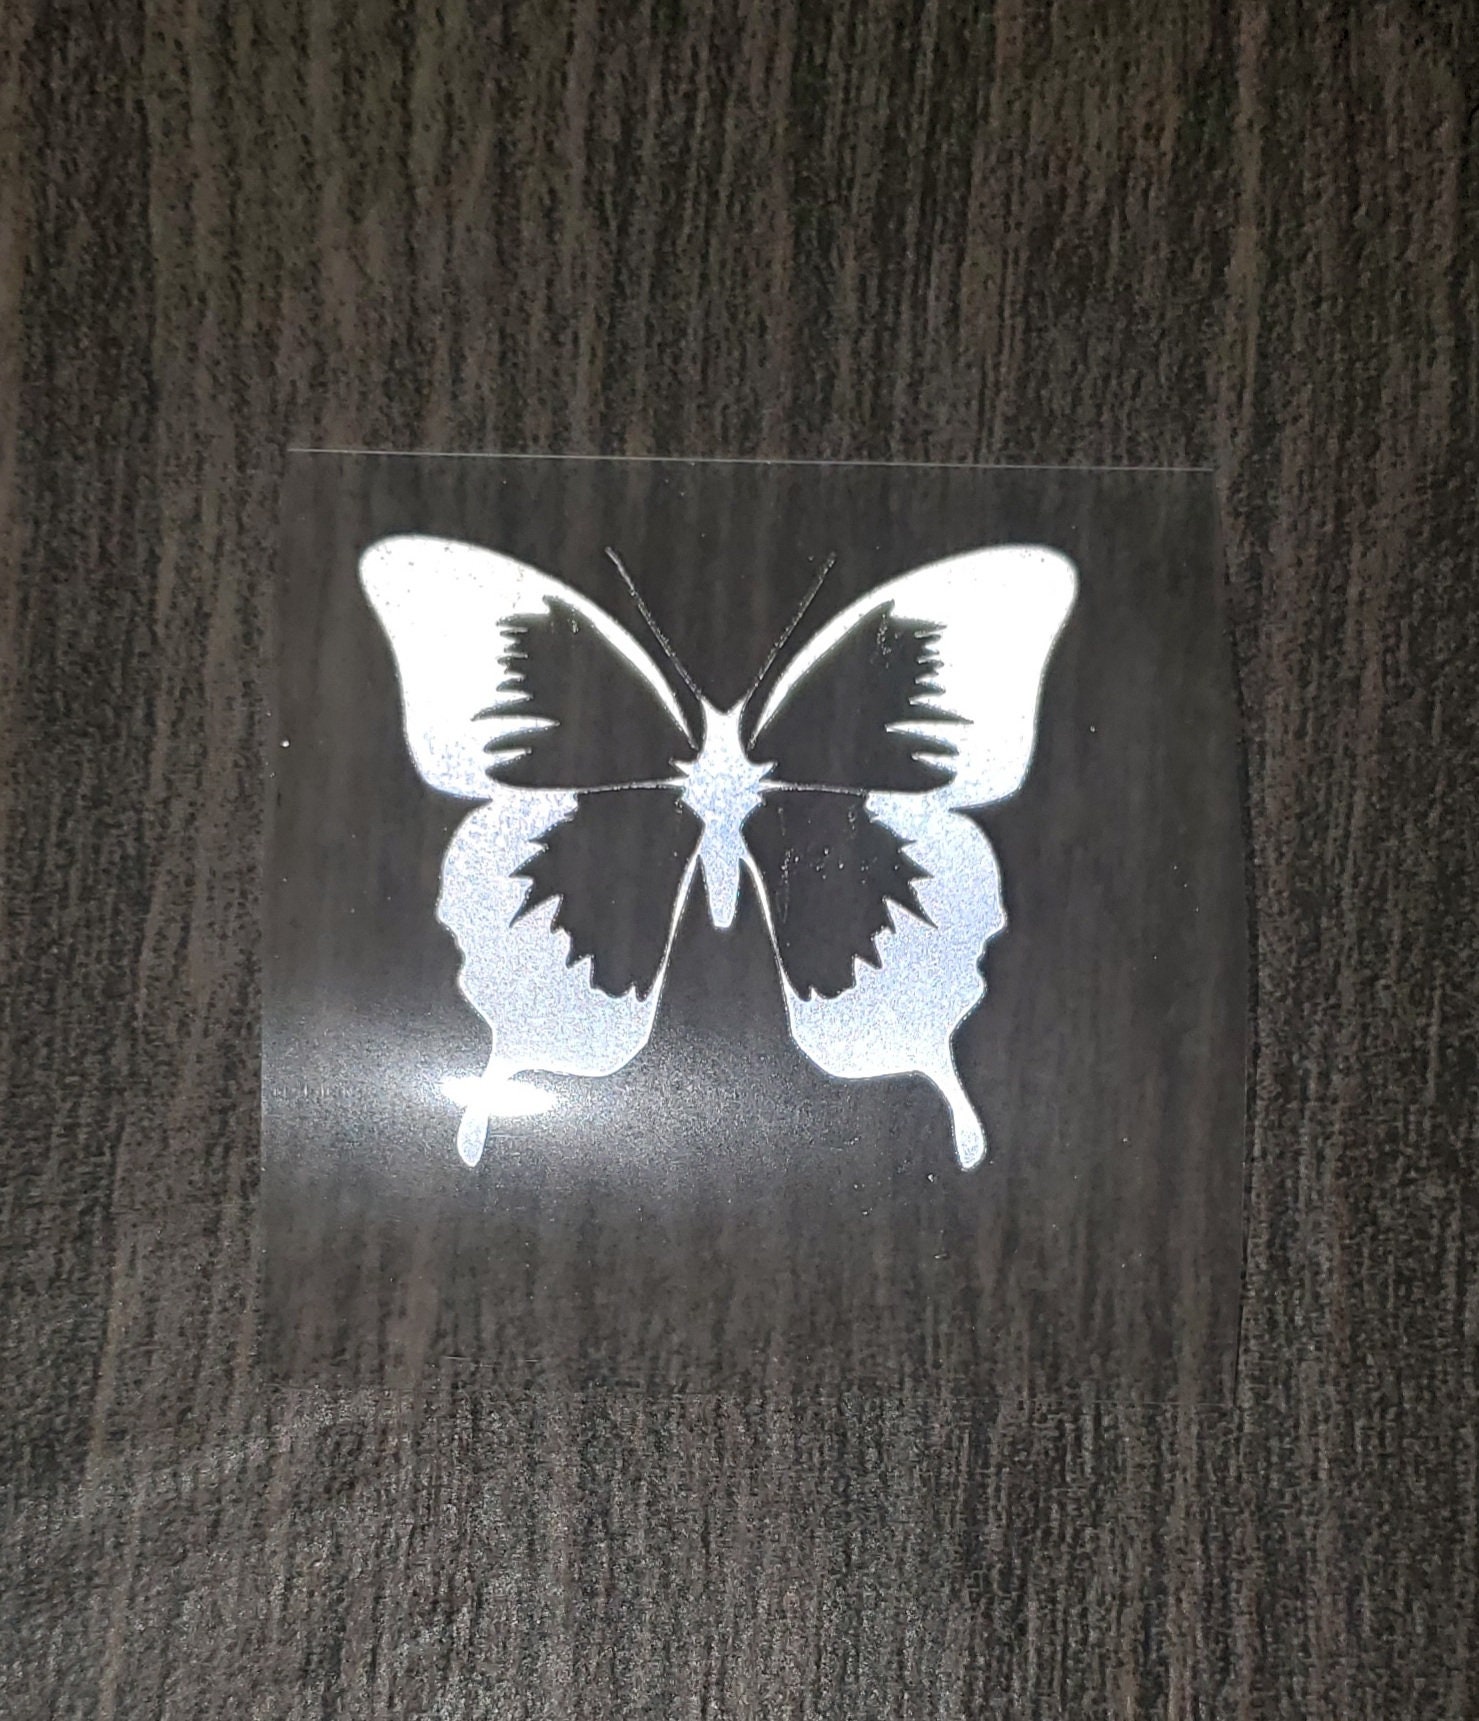 3M Reflective Butterfly Heat Transfer Vinyl Iron-on Bundle. | Etsy